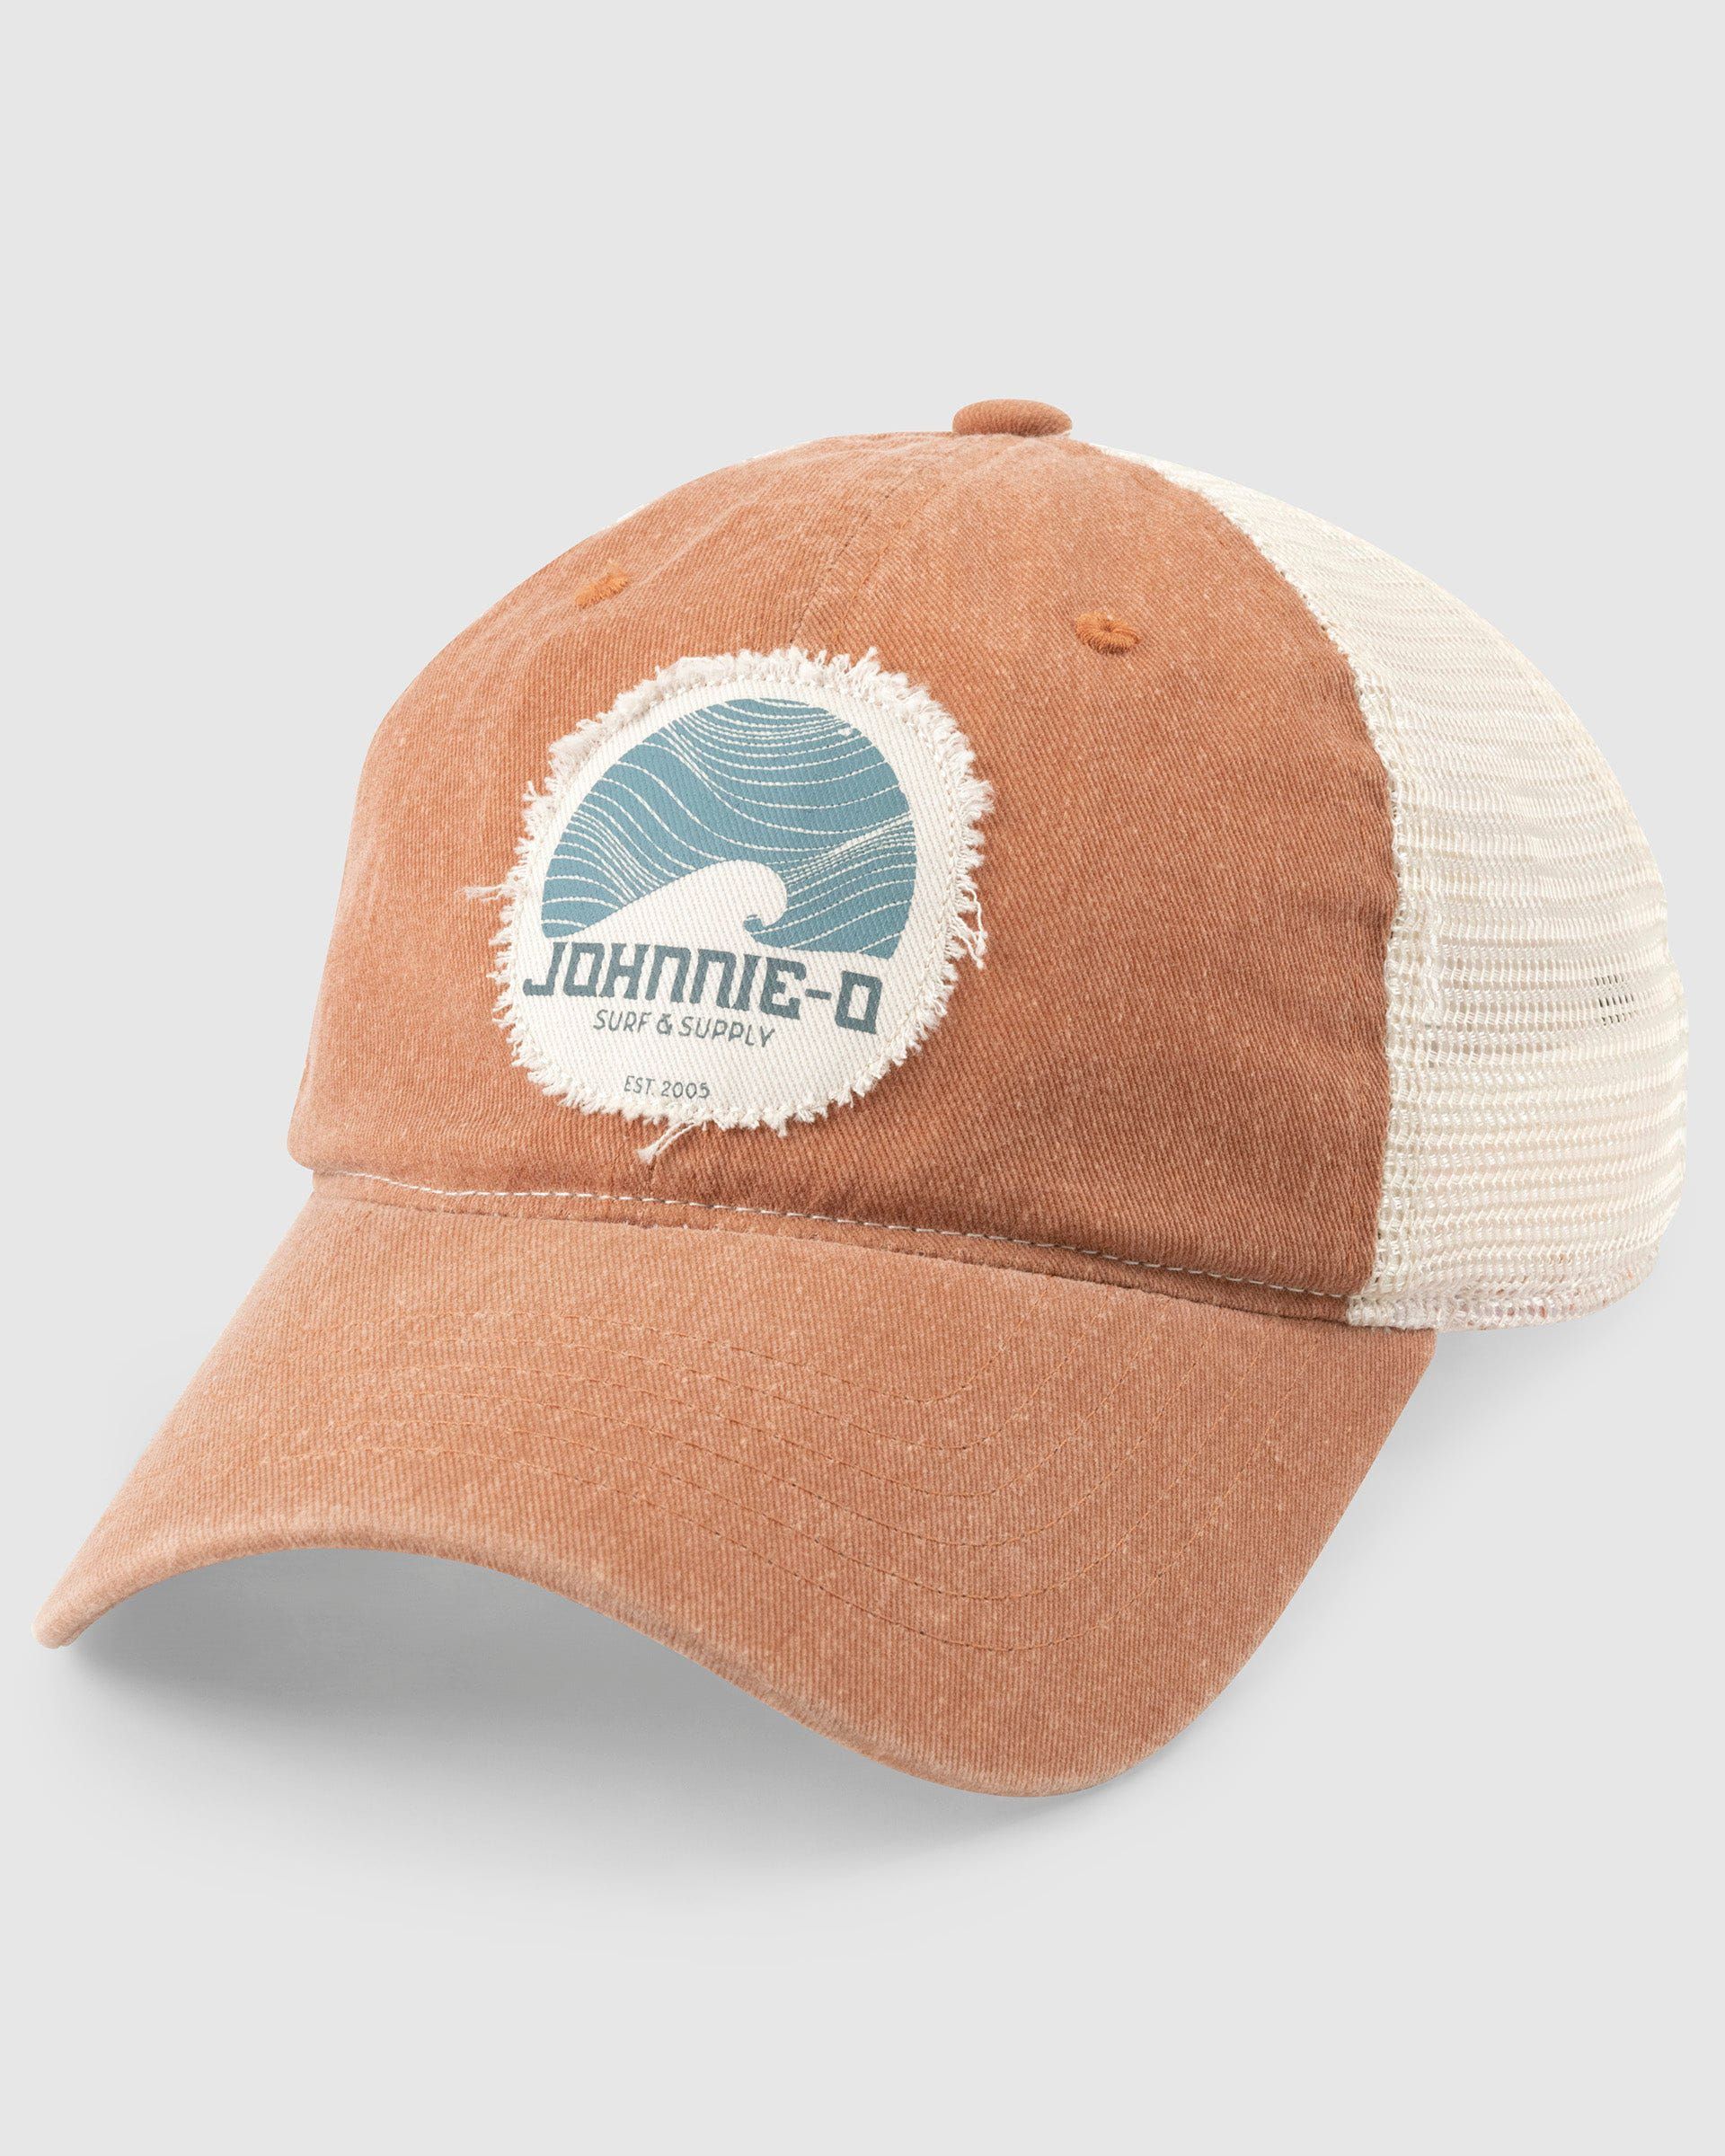 Surf & Supply Trucker Hat | johnnie O